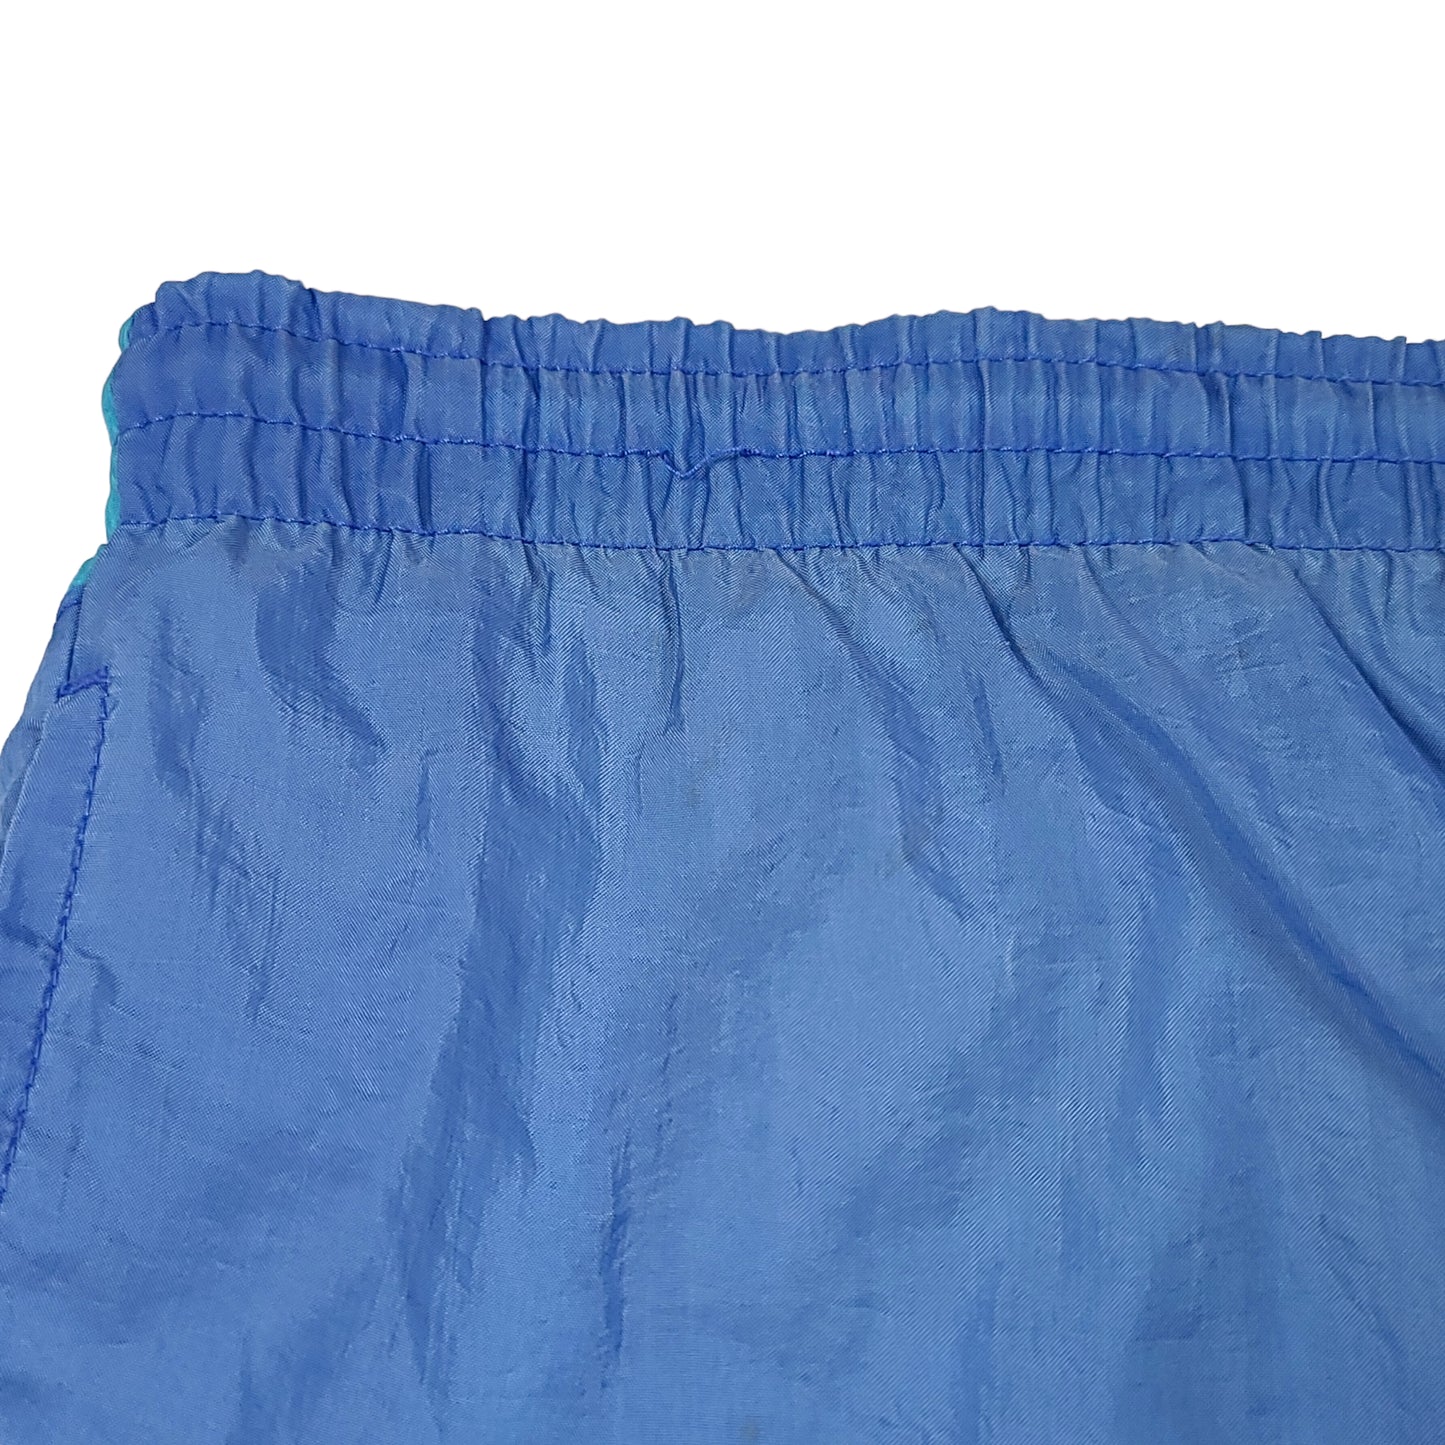 Vintage Nike Blue Color Block Big Swoosh Nylon Shorts